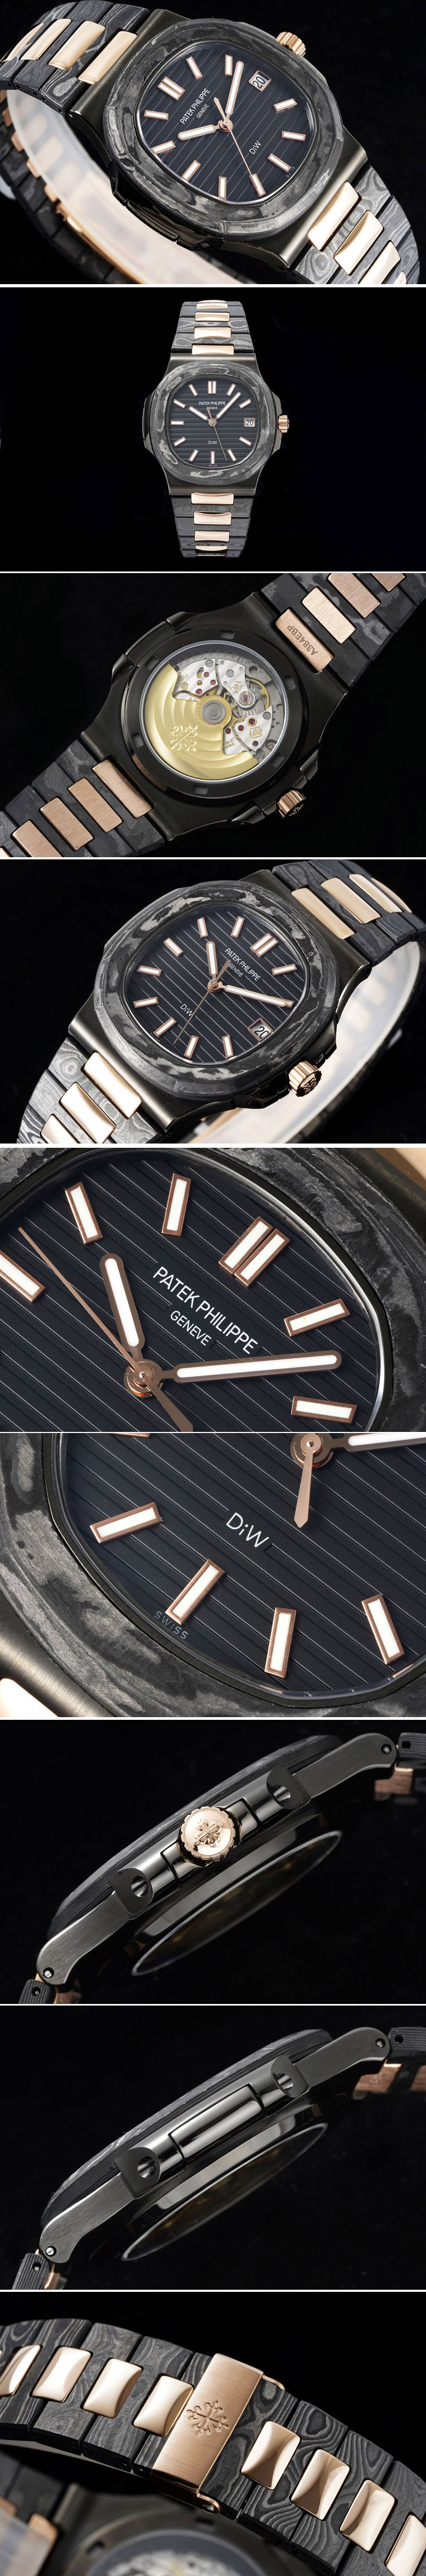 Replica Patek Philippe Nautilus 5711 DIW Carbon DIWF 1:1 Best Edition Black Textured Dial on Carbon/RG Bracelet 324CS